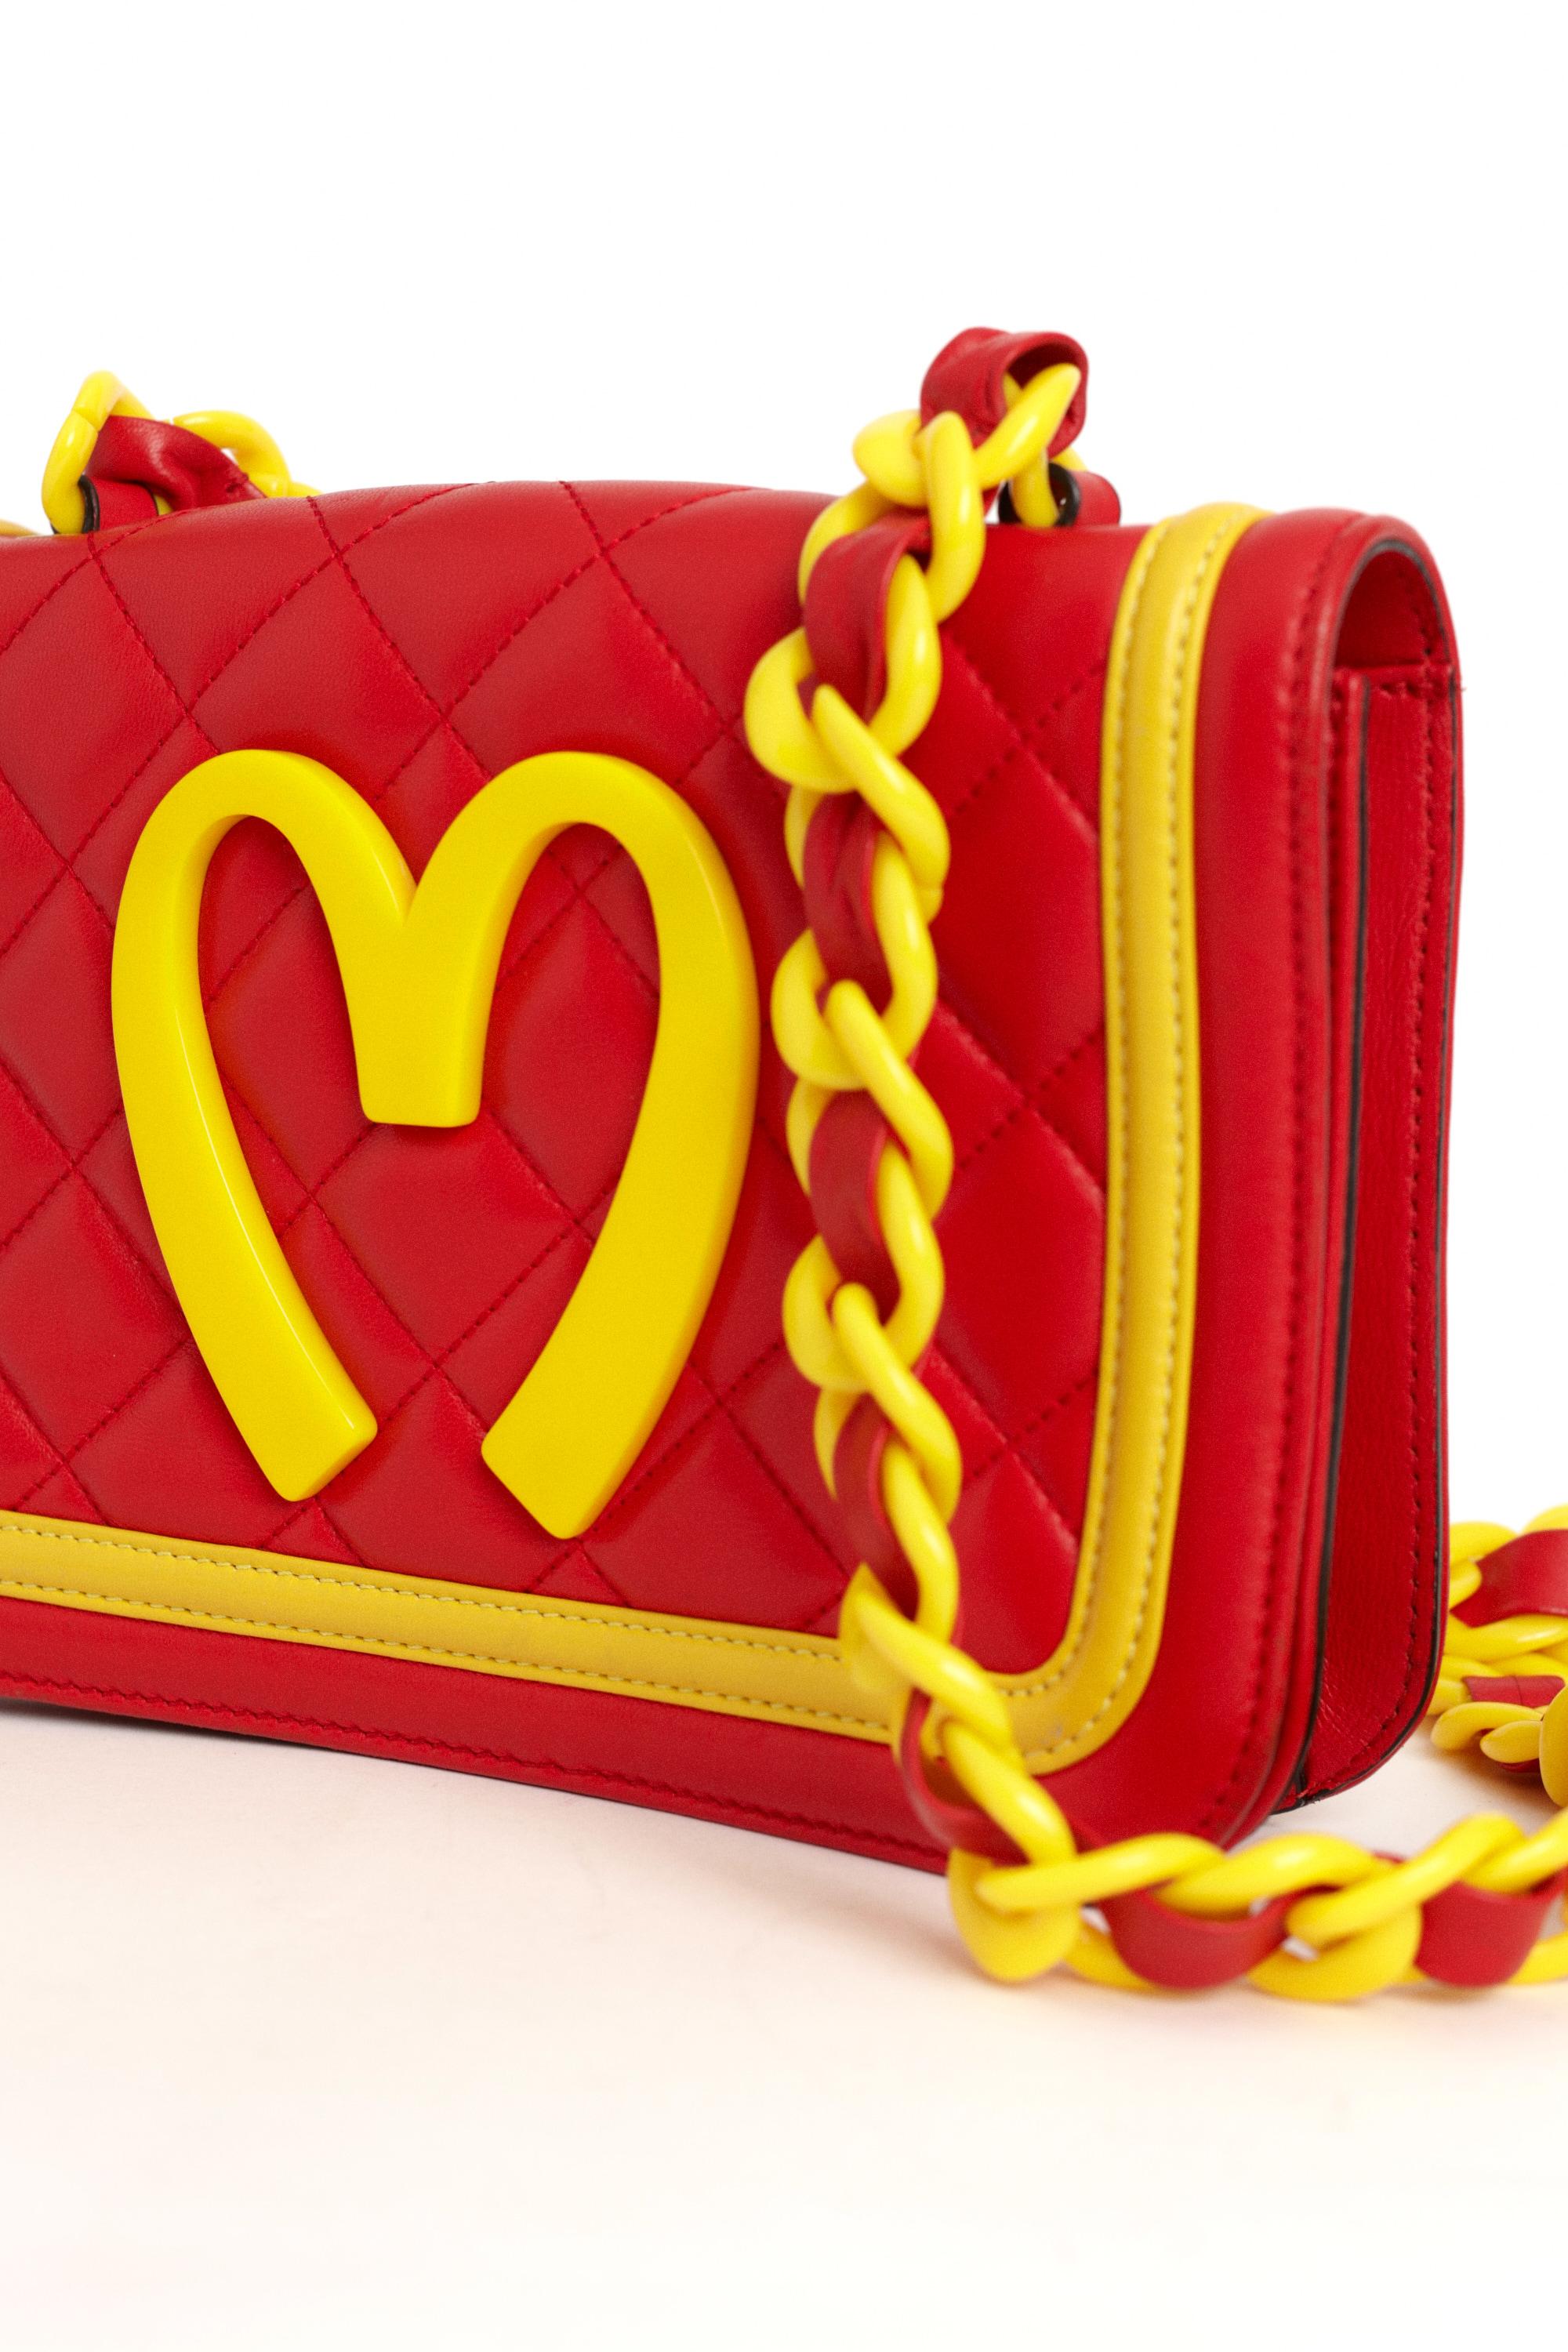 H/W 2014 McDonald's Leder-Umhängetasche für Damen oder Herren